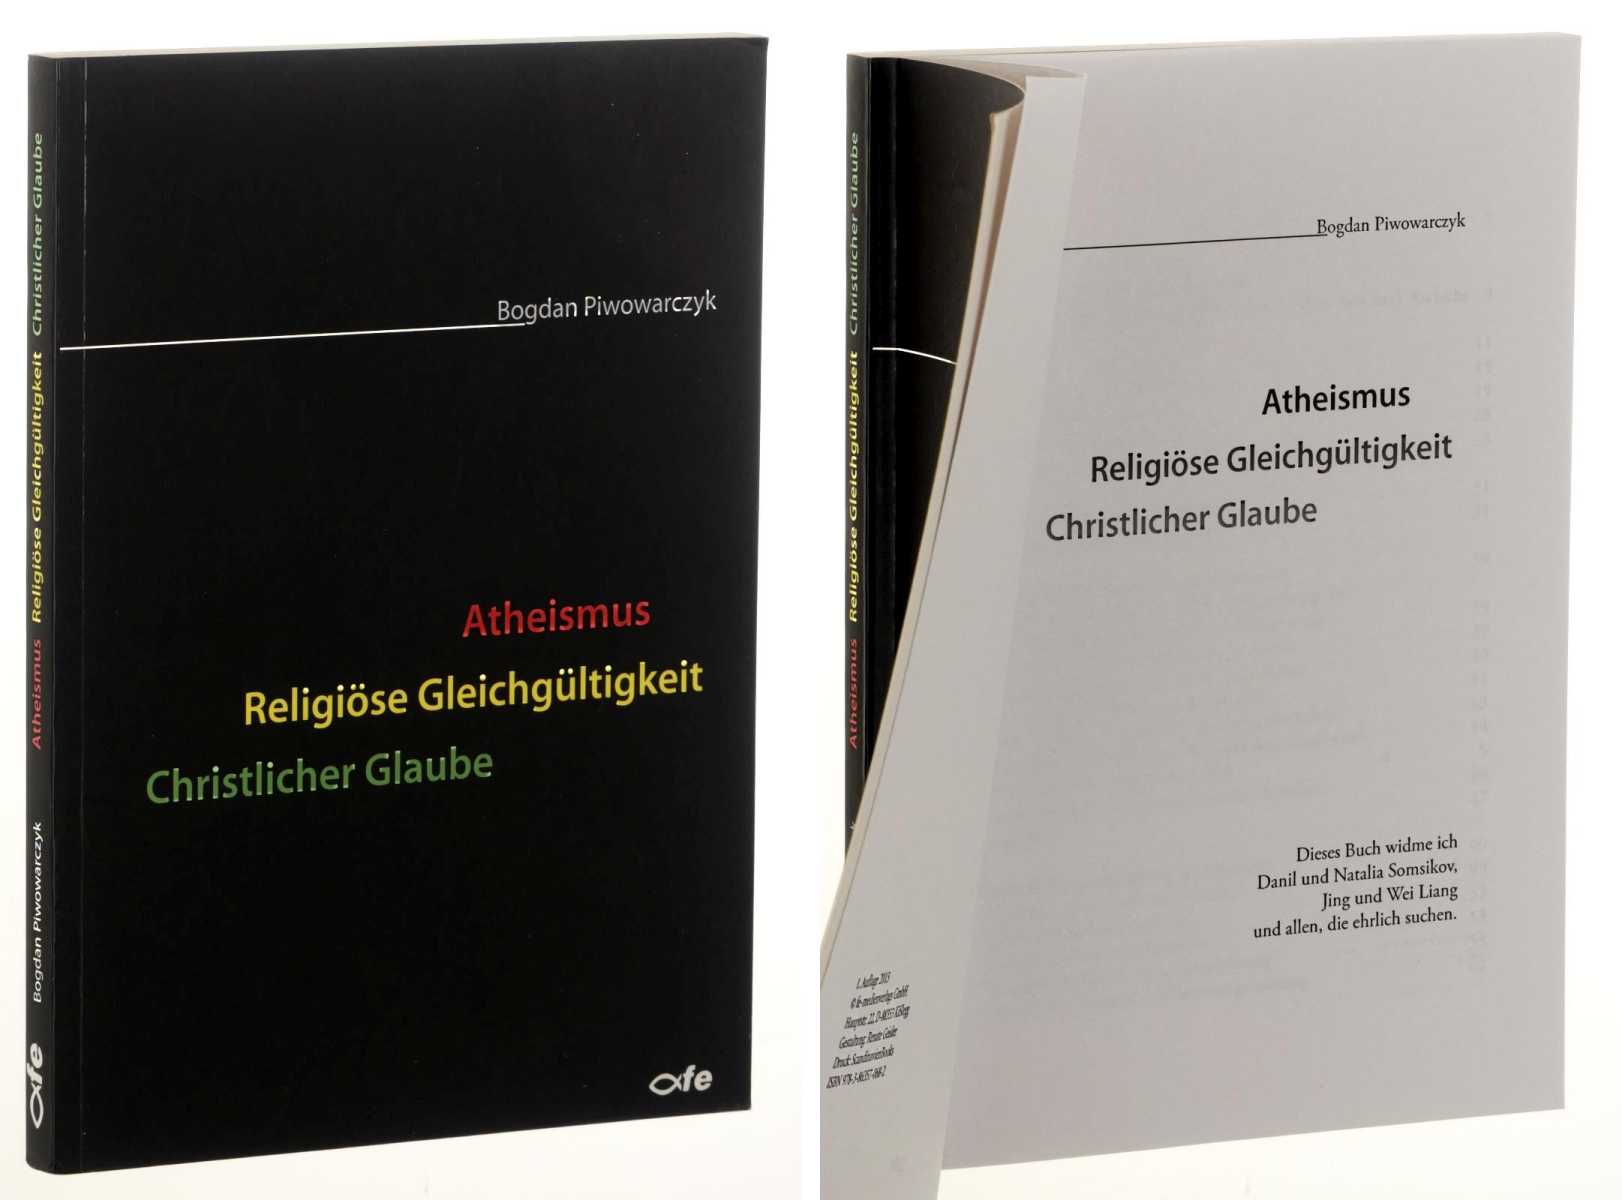 Piwowarczyk, Bogdan:  Atheismus - Religiöse Gleichgültigkeit - Christlicher Glaube. 